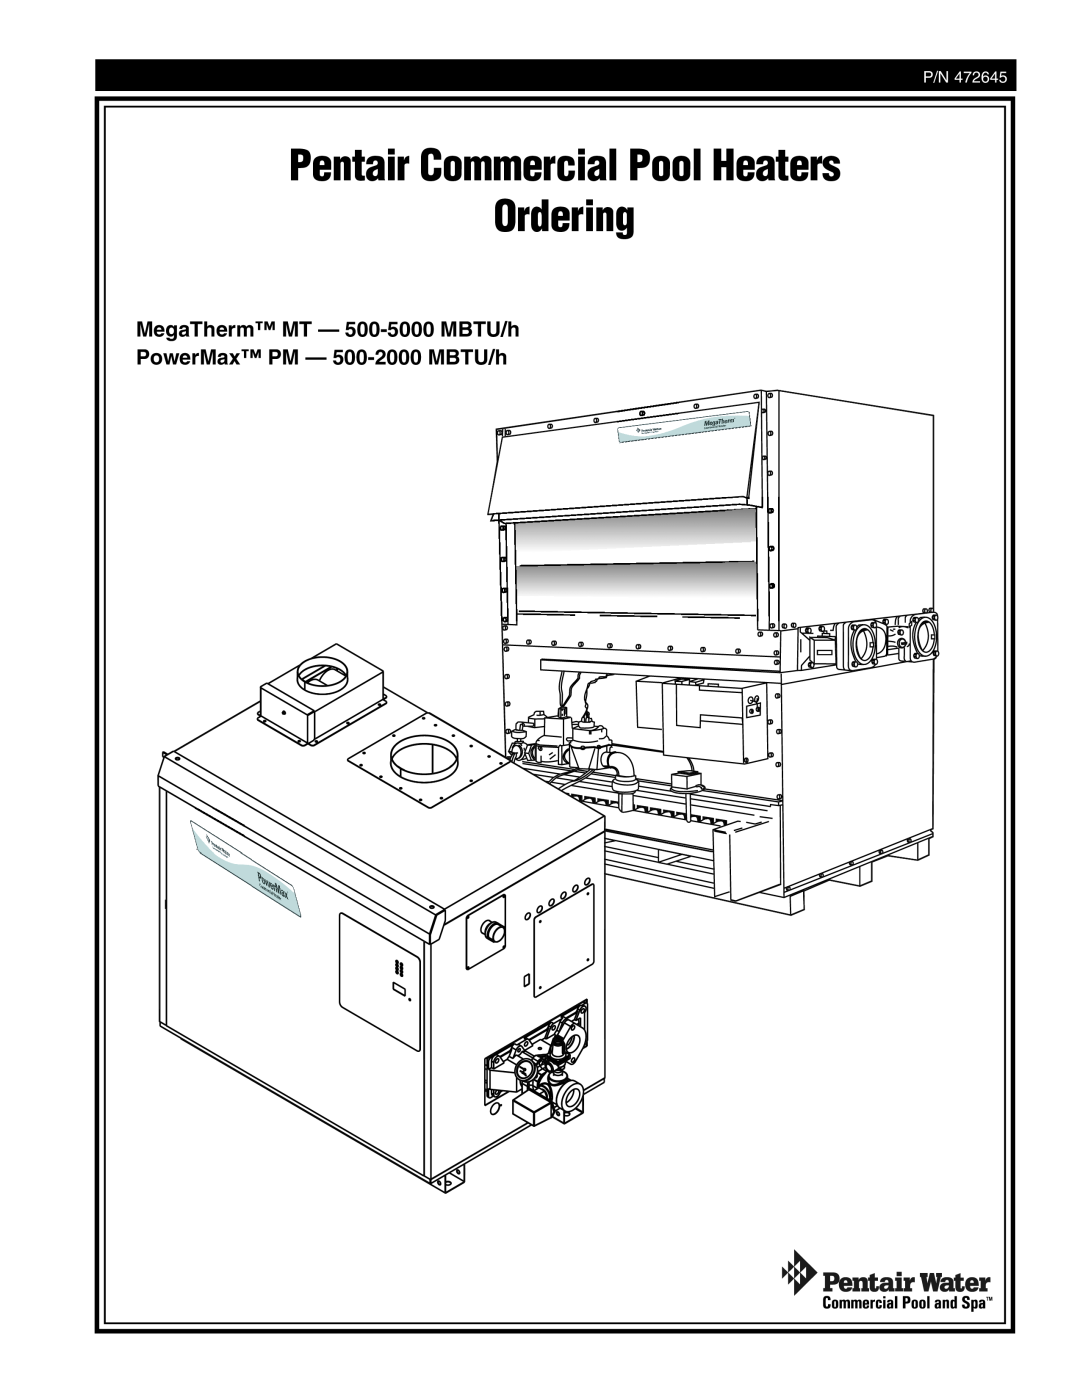 Pentair 472645 manual Pentair Commercial Pool Heaters Ordering, MegaTherm MT - 500-5000MBTU/h 